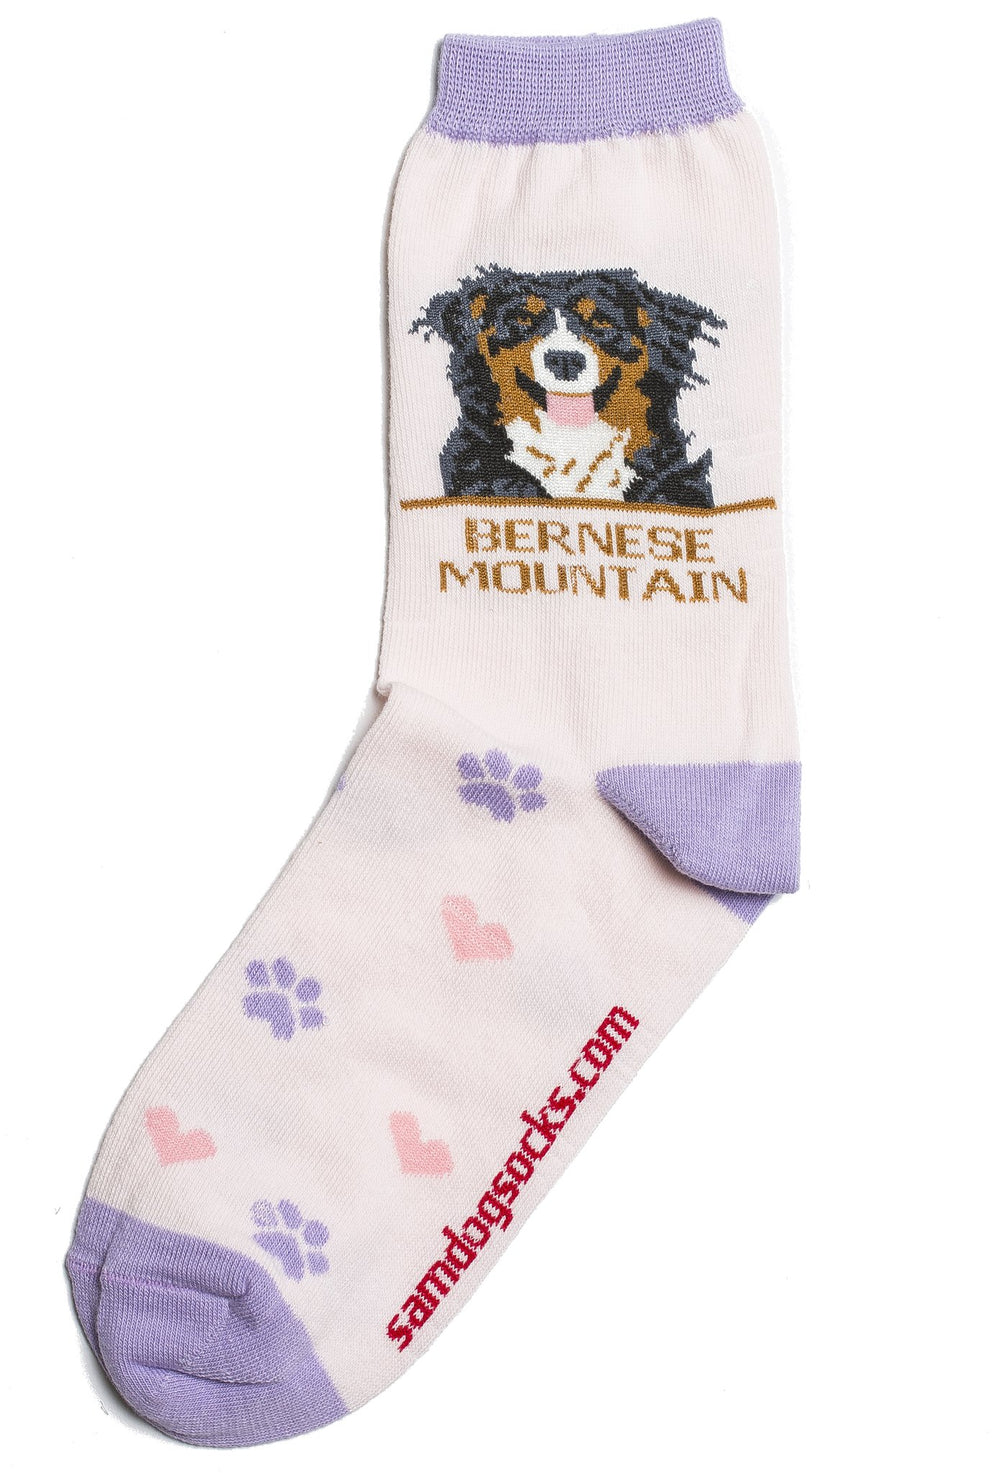 Bernese socks for women - pink & purple